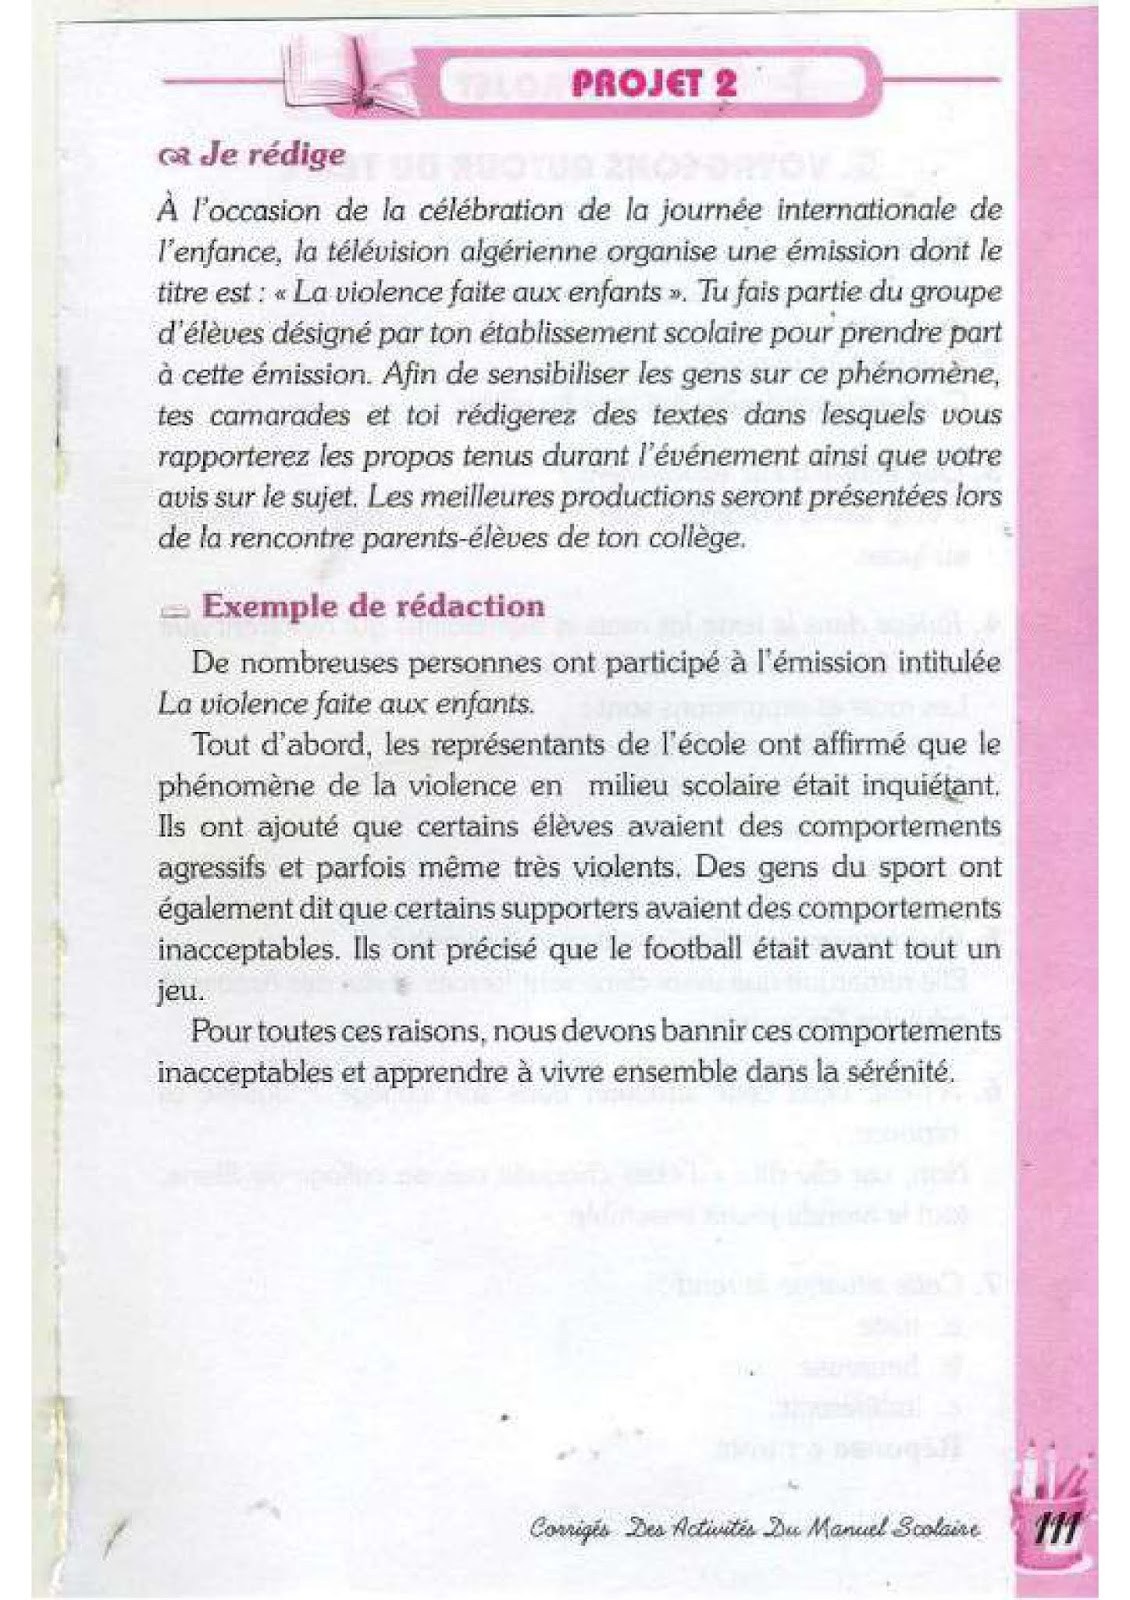 حل تمارين صفحة 96 الفرنسية للسنة الرابعة متوسط - الجيل الثاني